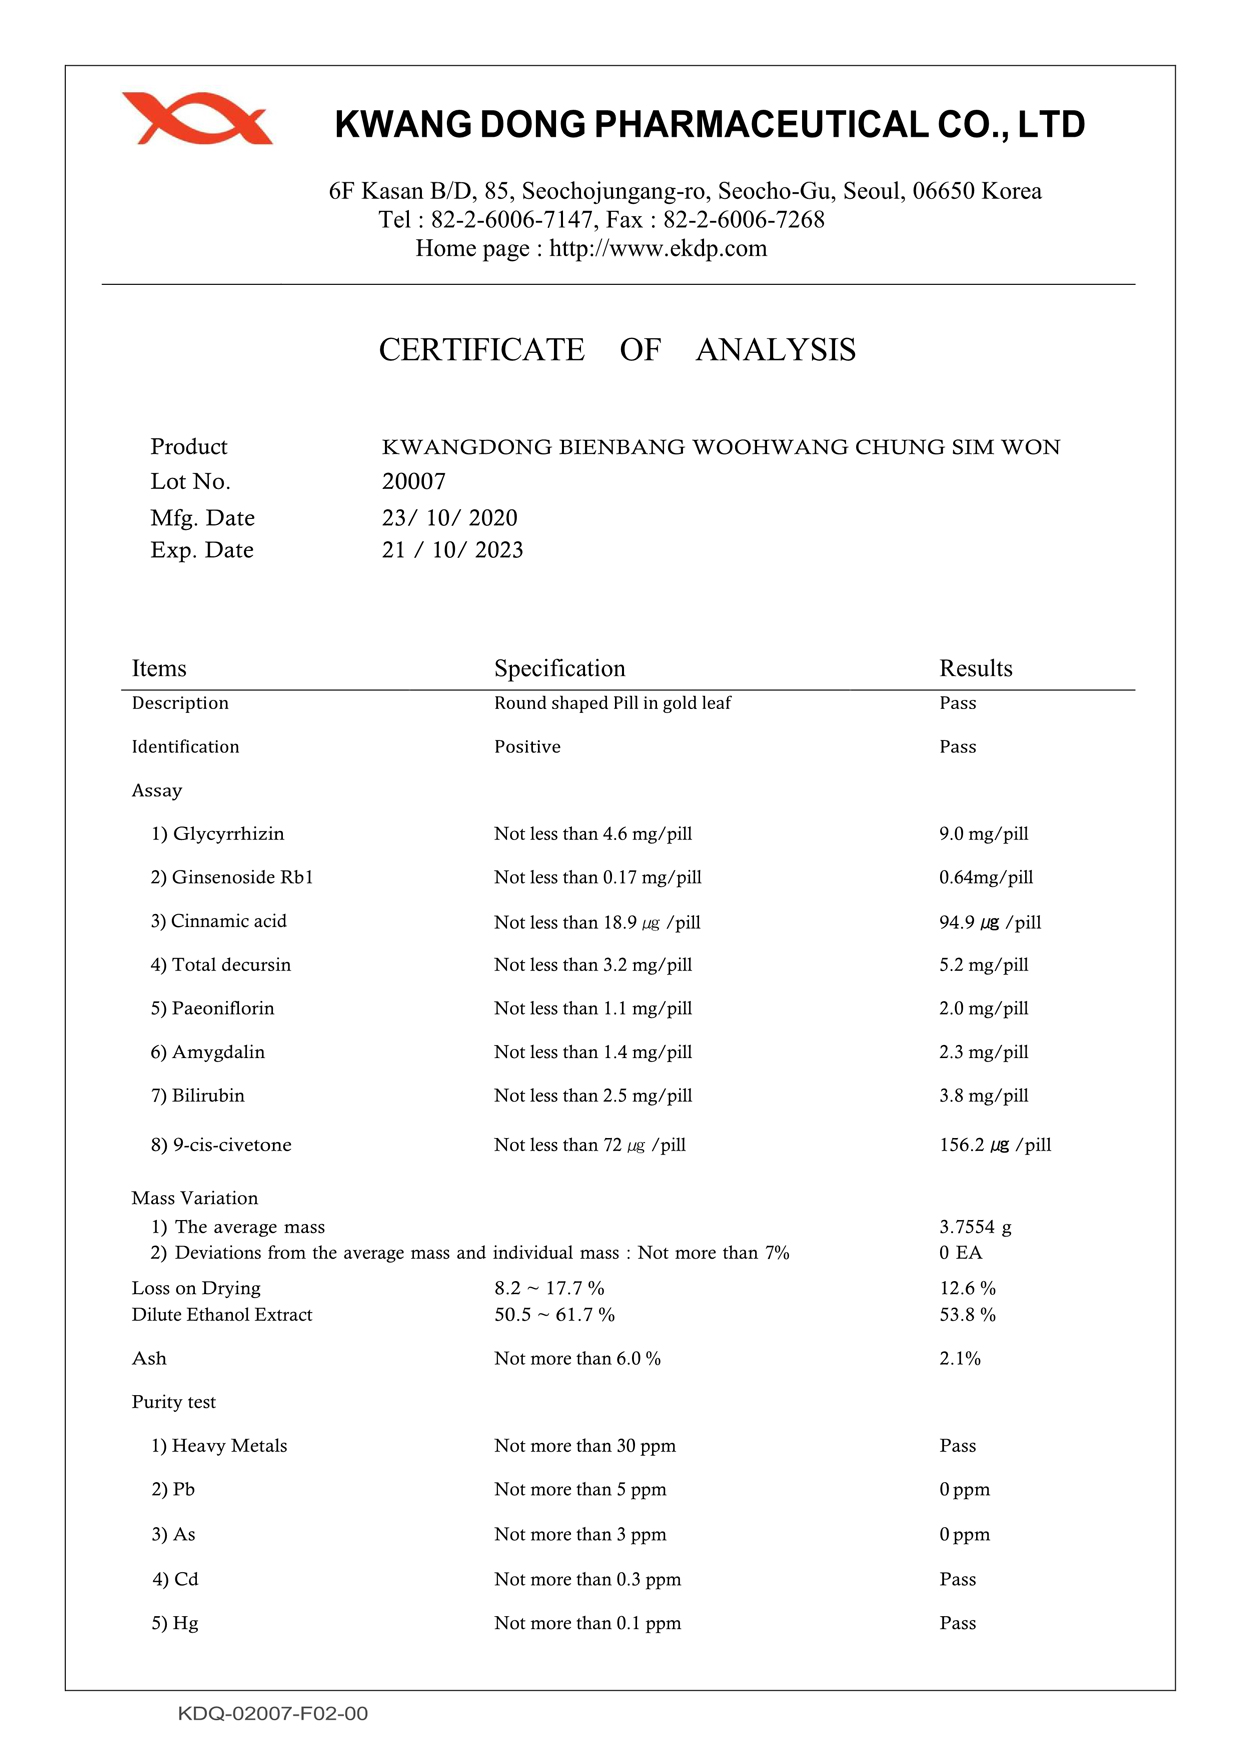 Certificate of analysis (Chứng chỉ phân tích thành phần)